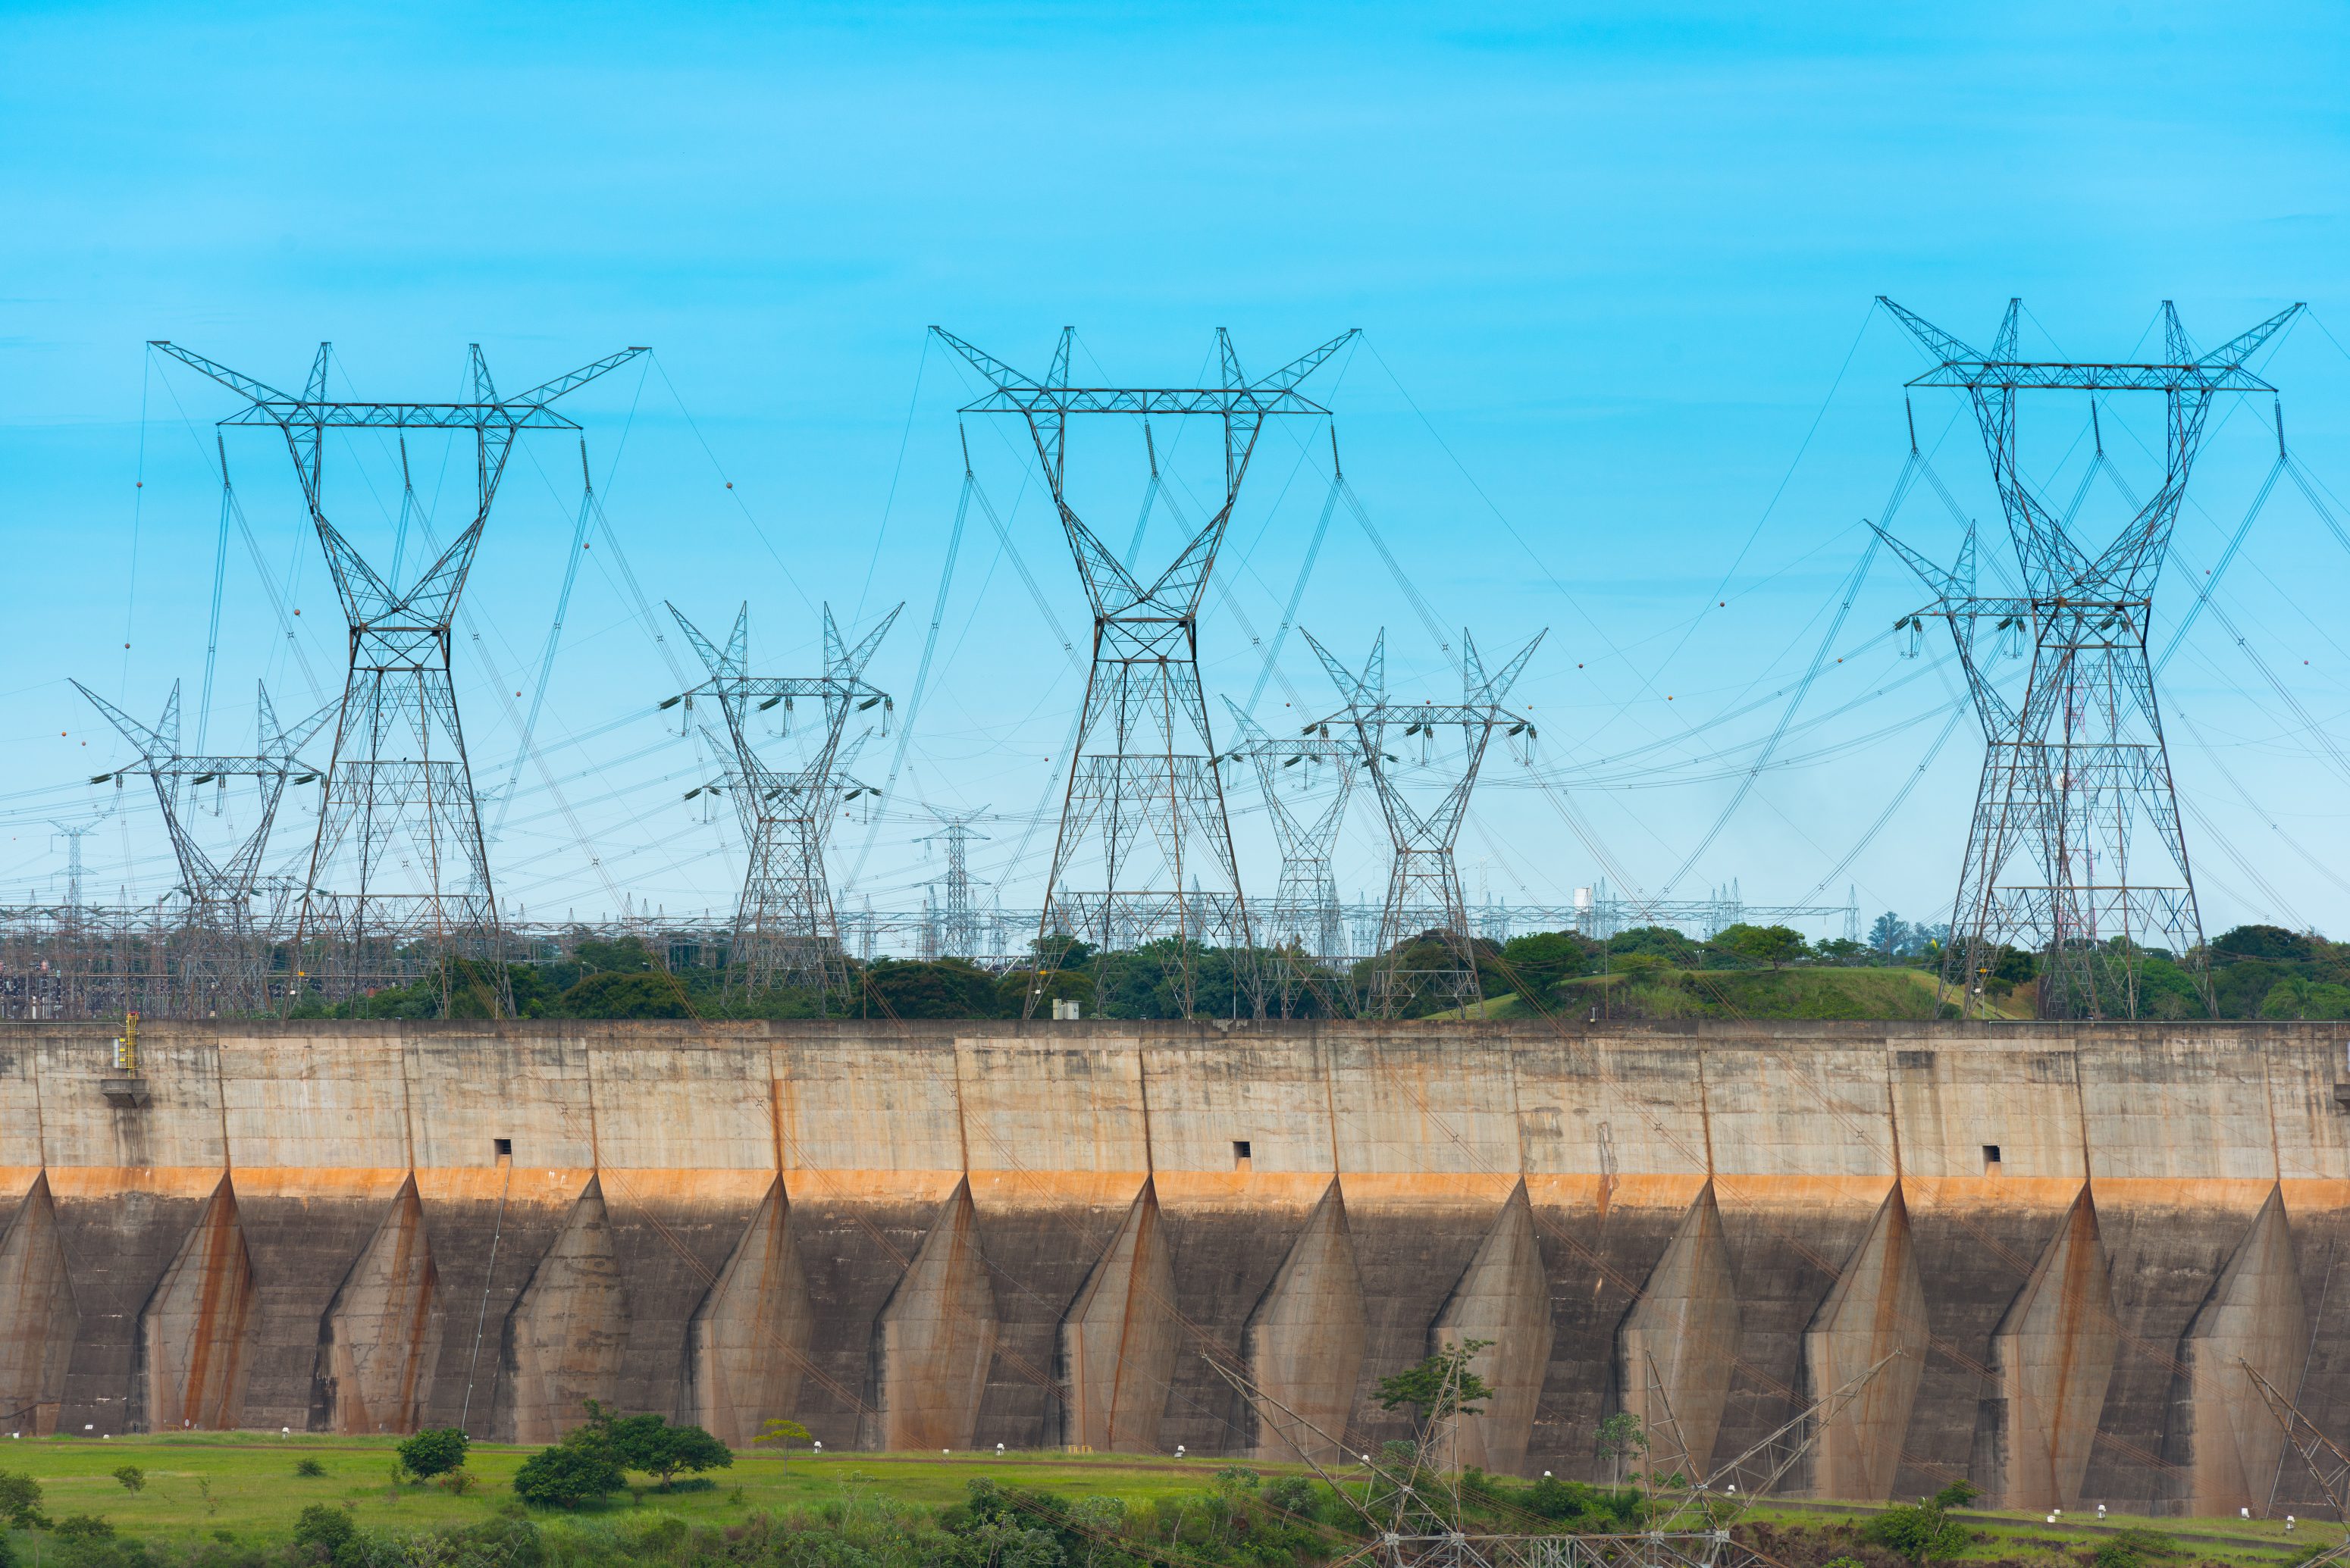 Linhas elétricas em represa de Itaipu, Parana, Brasil. - Blog Famatel